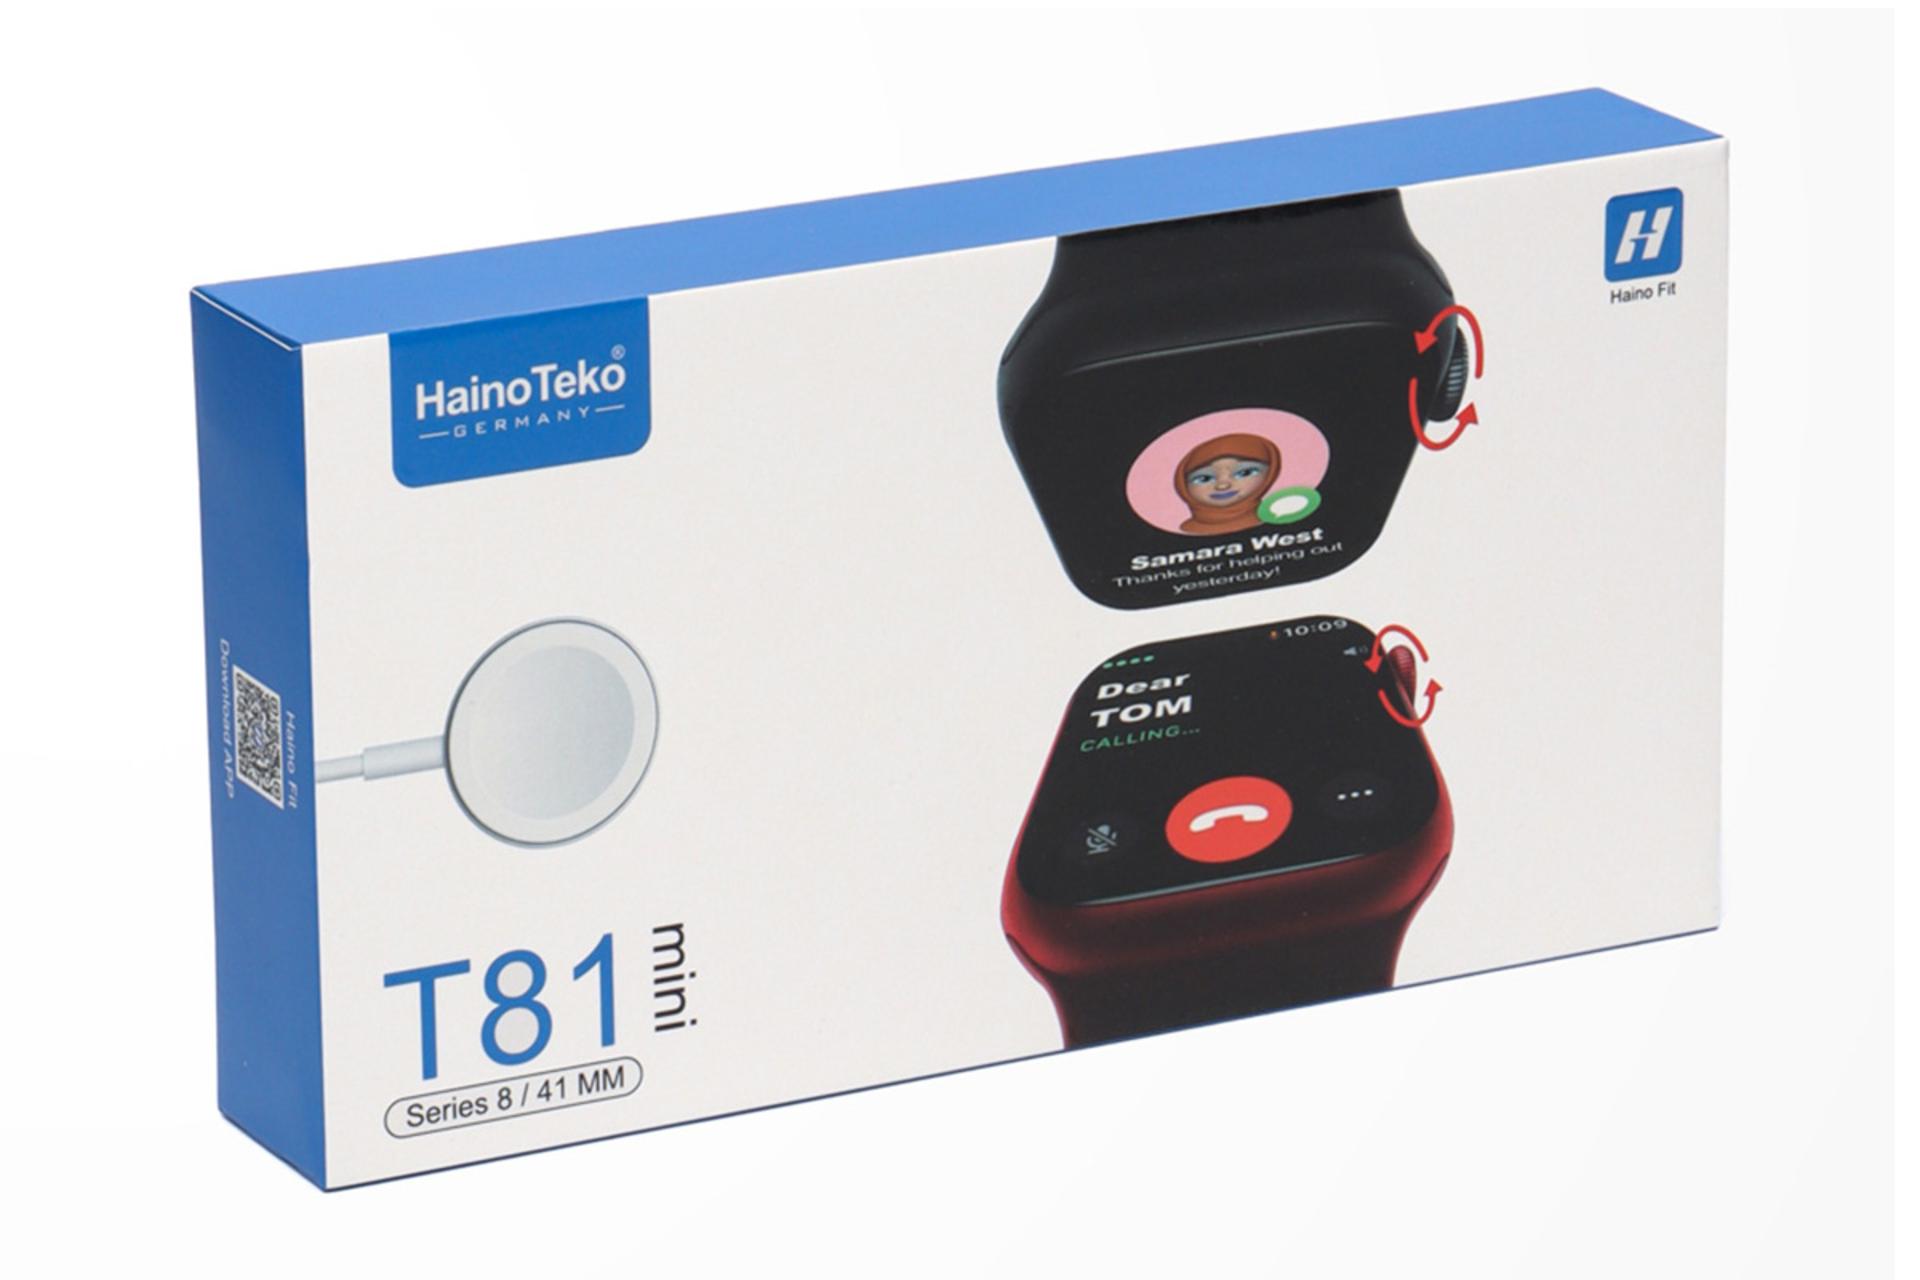 جعبه ساعت هوشمند هاینو تکو Haino Teko T81 Mini